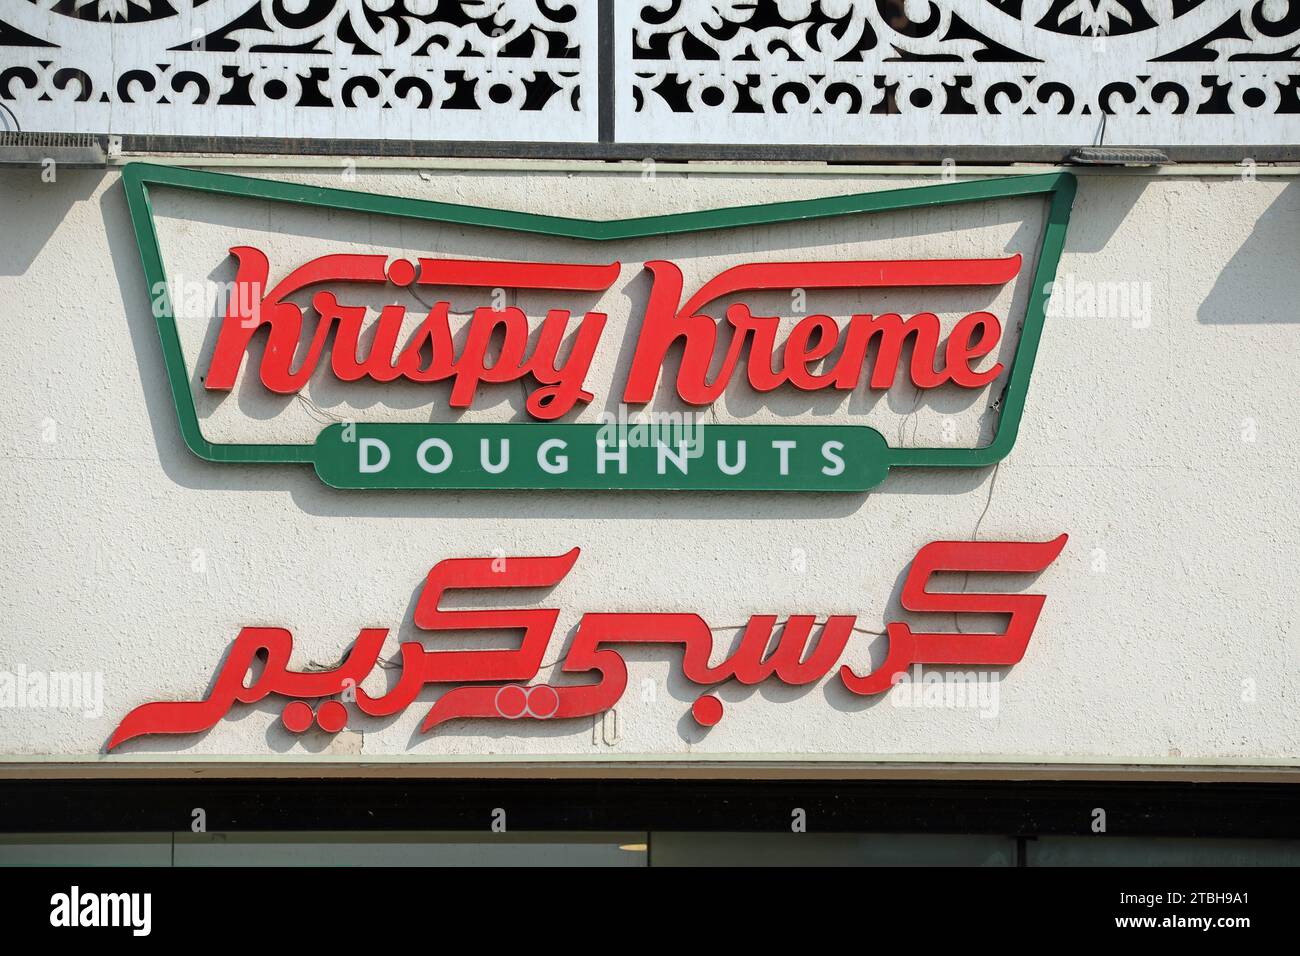 Sign for Krispy Kreme doughnuts in Saudi Arabia Stock Photo